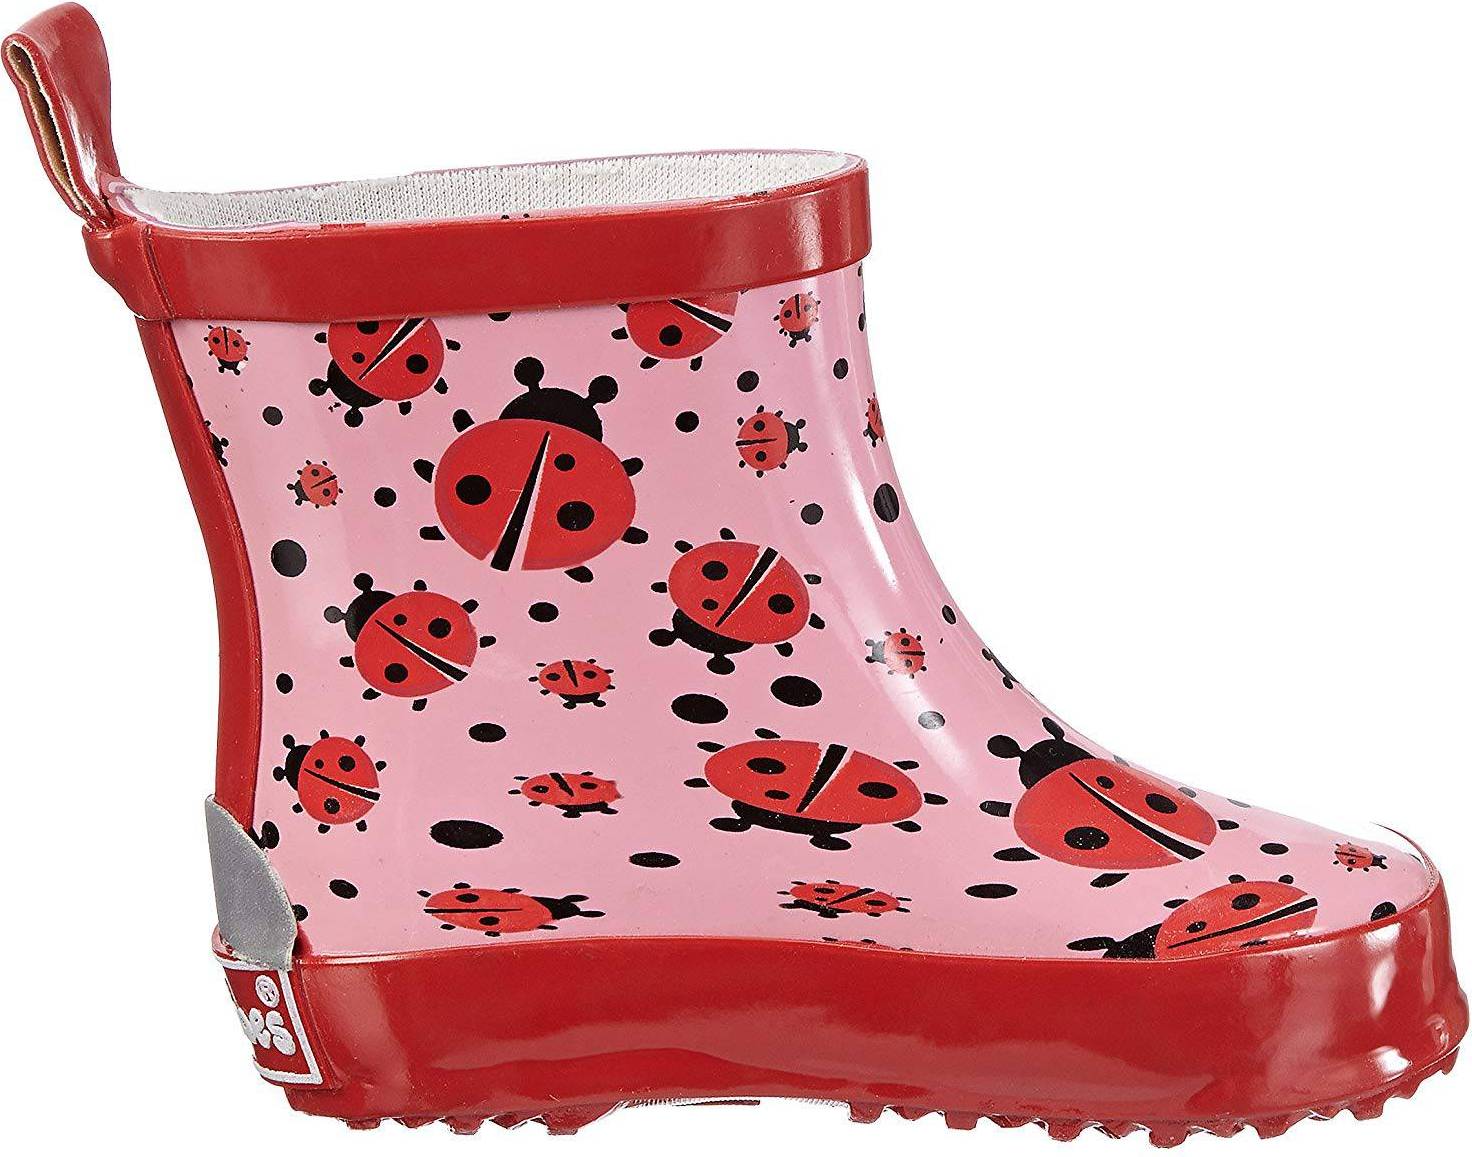  Bild på Playshoes Half Shaft Boots - Ladybug gummistövlar